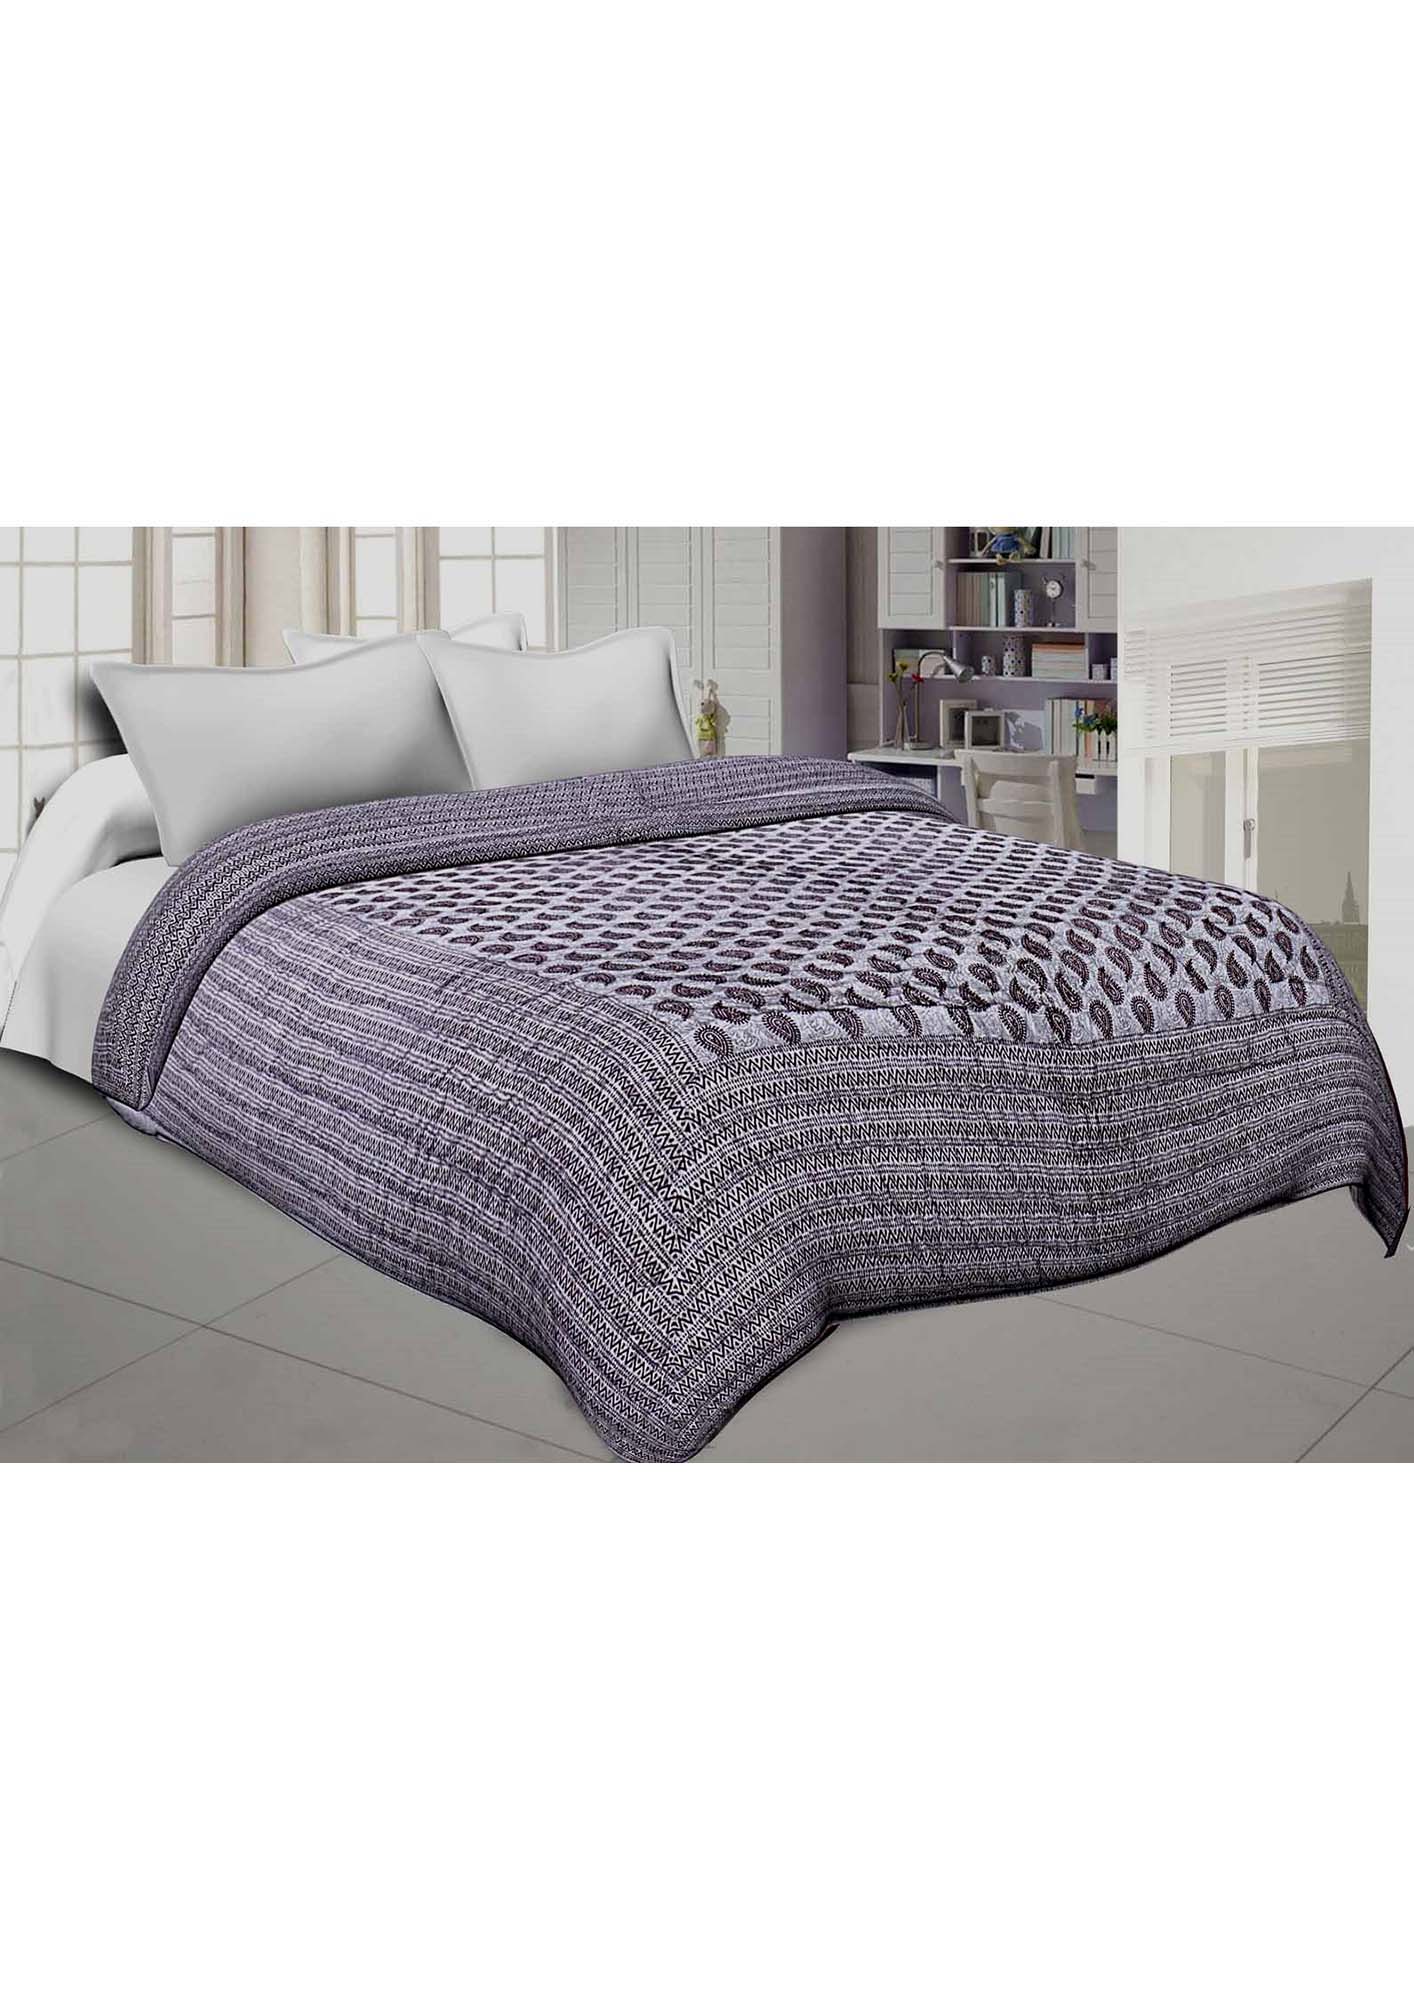 KC270019 - Jaipuri Cotton Quilt Double Bed Rajai (Premium Quality)